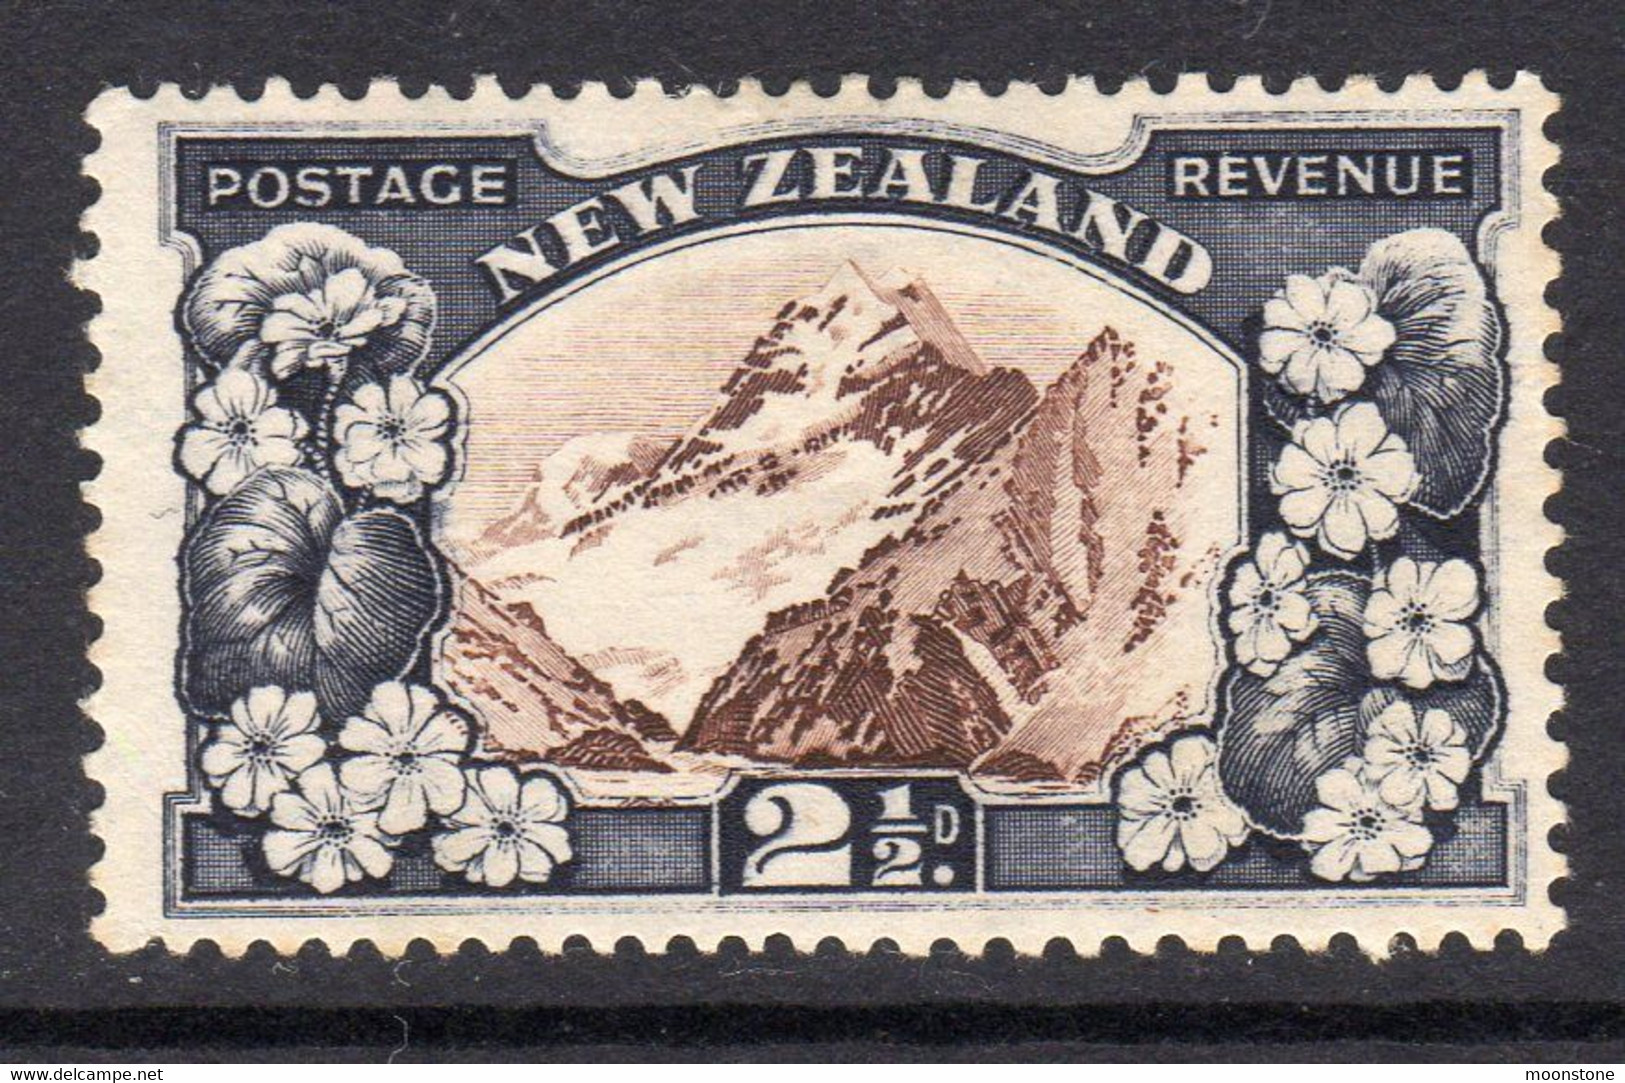 New Zealand GV 1935-6 2½d Mount Cook Definitive, Hinged Mint, SG 560 (A) - Ongebruikt